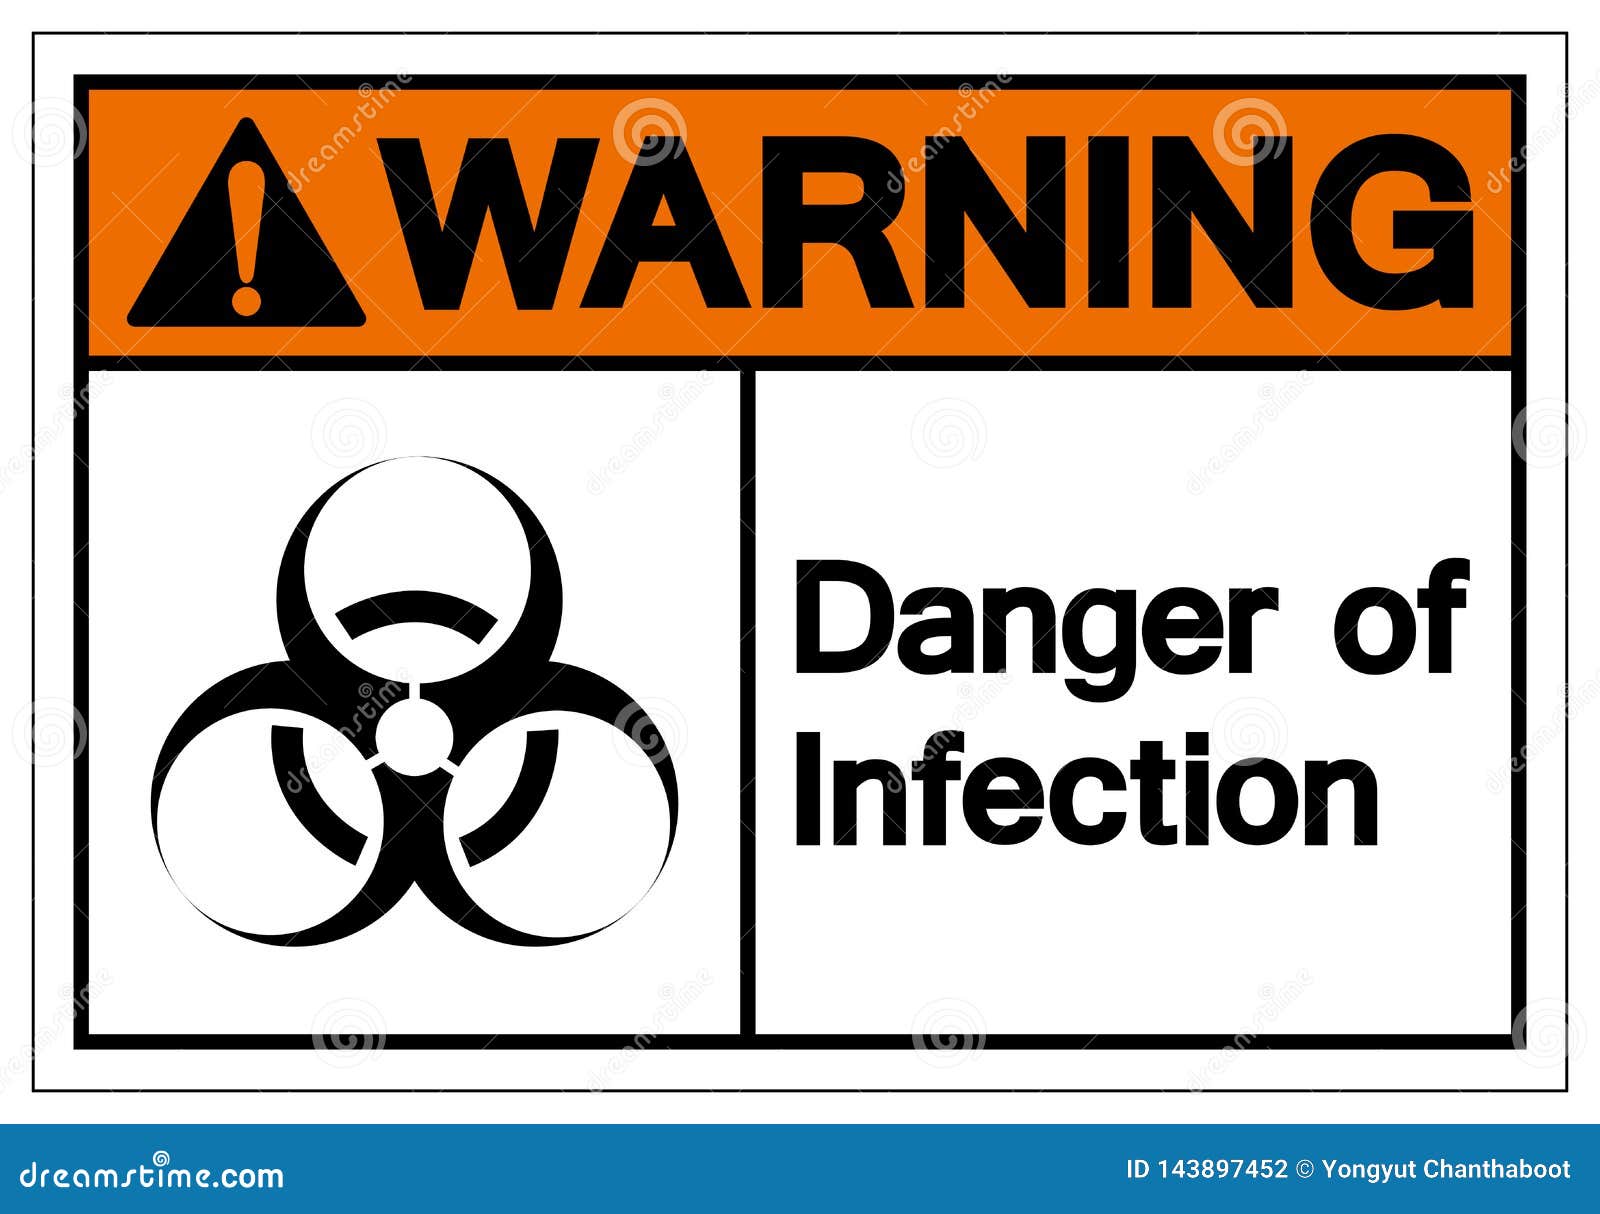 Warning Danger of Infection Danger & Warning Labels 